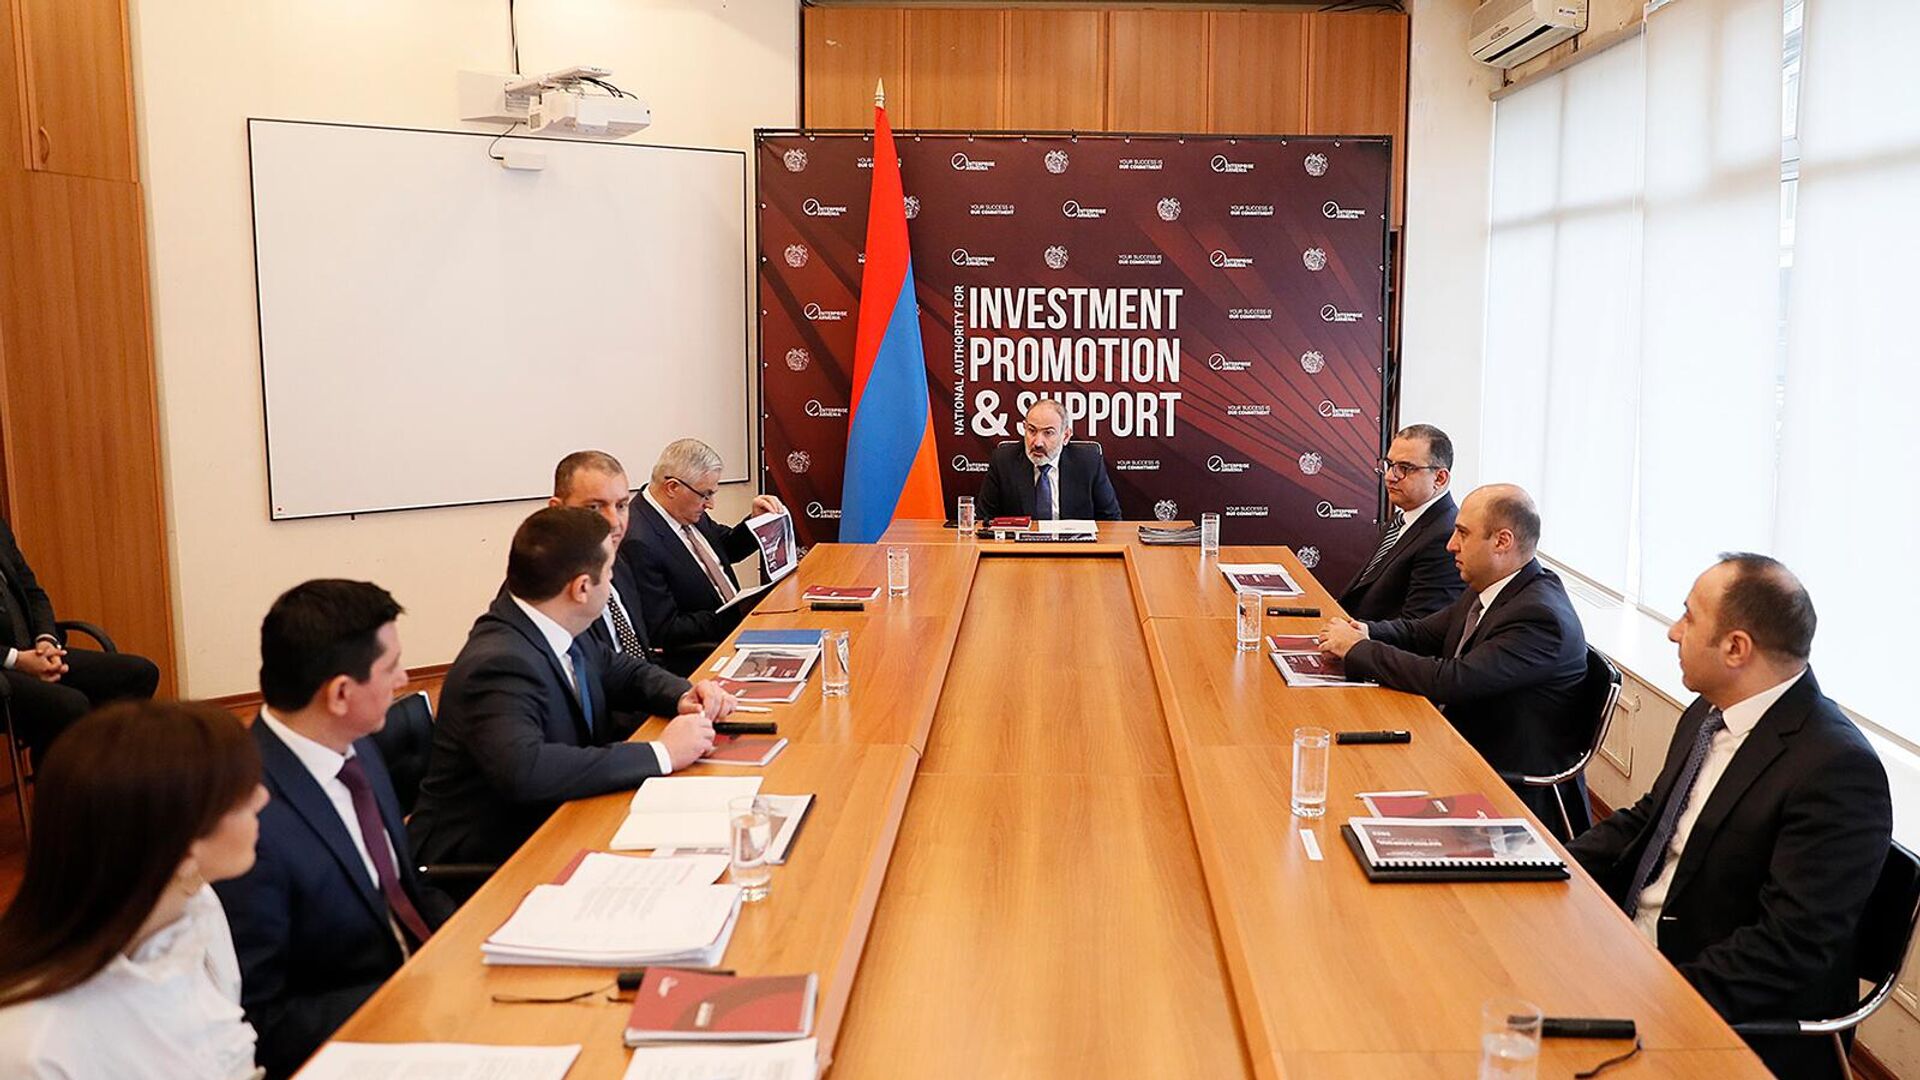 ՀՀ վարչապետ Նիկոլ Փաշինյանին է ներկայացվել «Էնթերփրայզ Արմենիա» ներդրումների աջակցման կենտրոնի 2022 թվականի կատարողականը - Sputnik Արմենիա, 1920, 17.03.2023